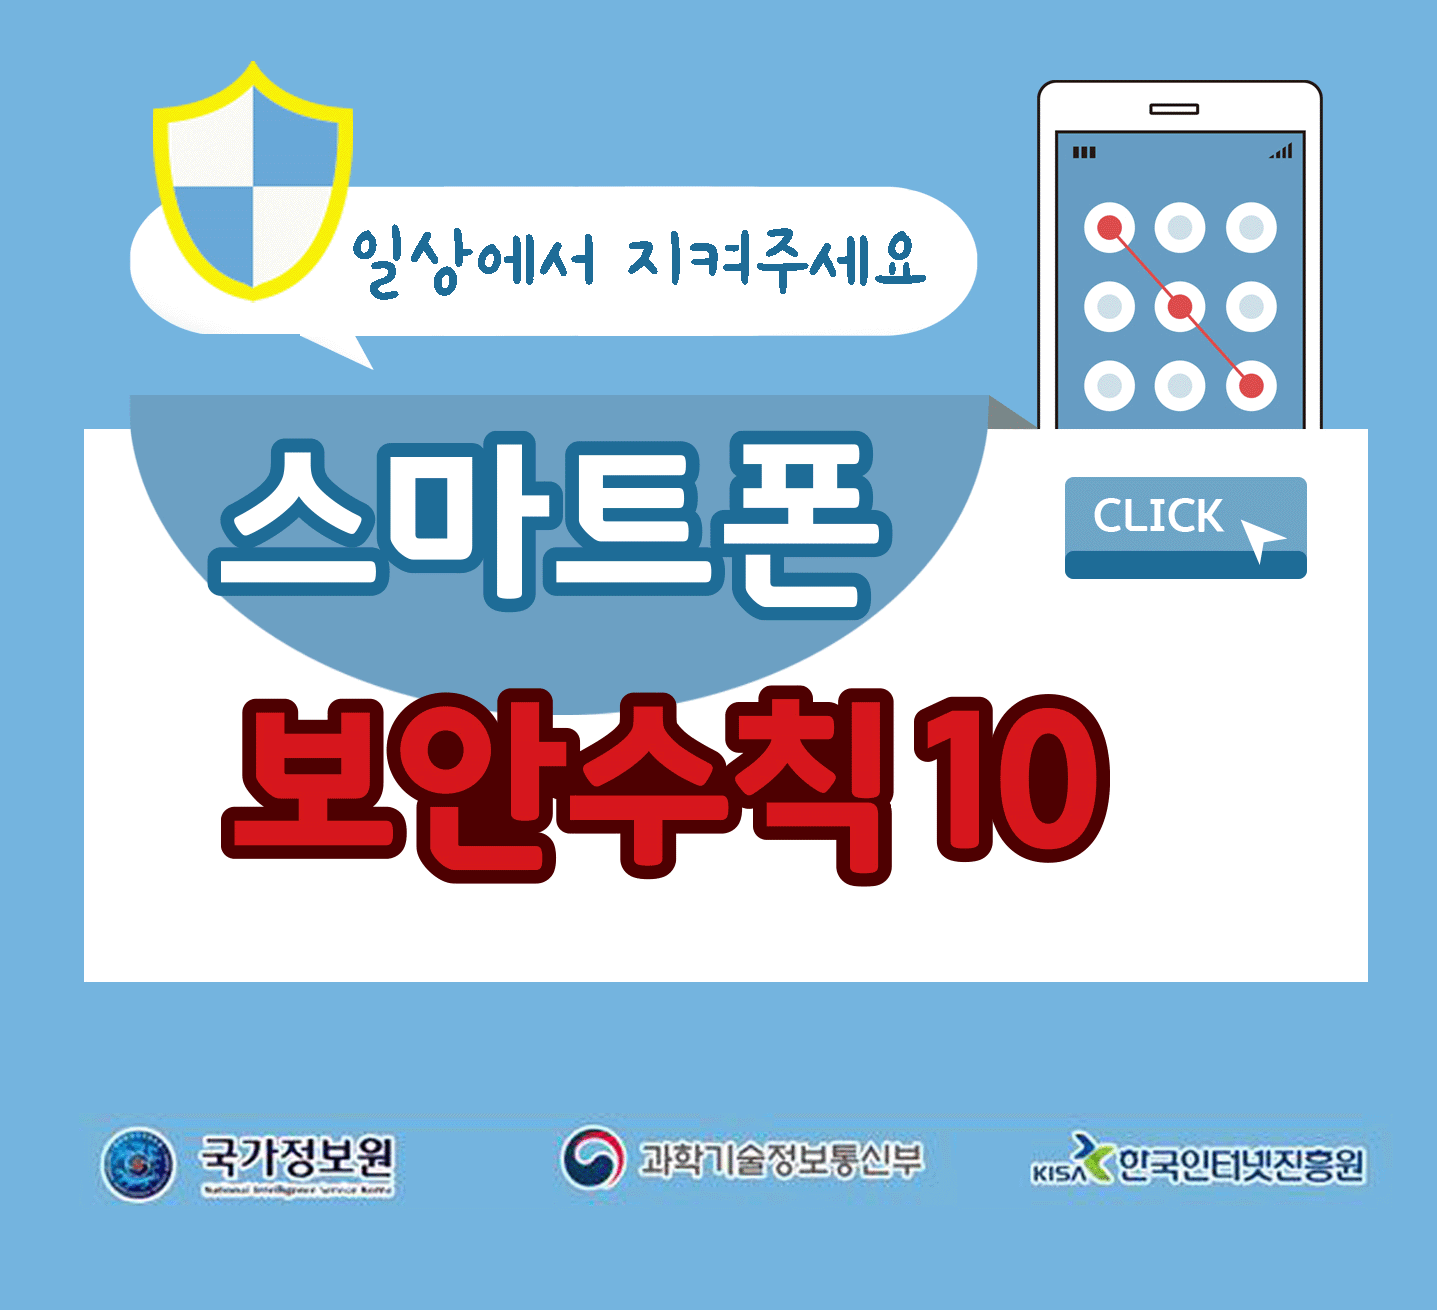 일상에서 지켜주세요
스마트폰 보안수칙 10 CLICK
국가정보원, 과학기술정보통신부, 한국인터넷진흥원;jsessionid=74326B5D19D6741EF13A867B42E40A03